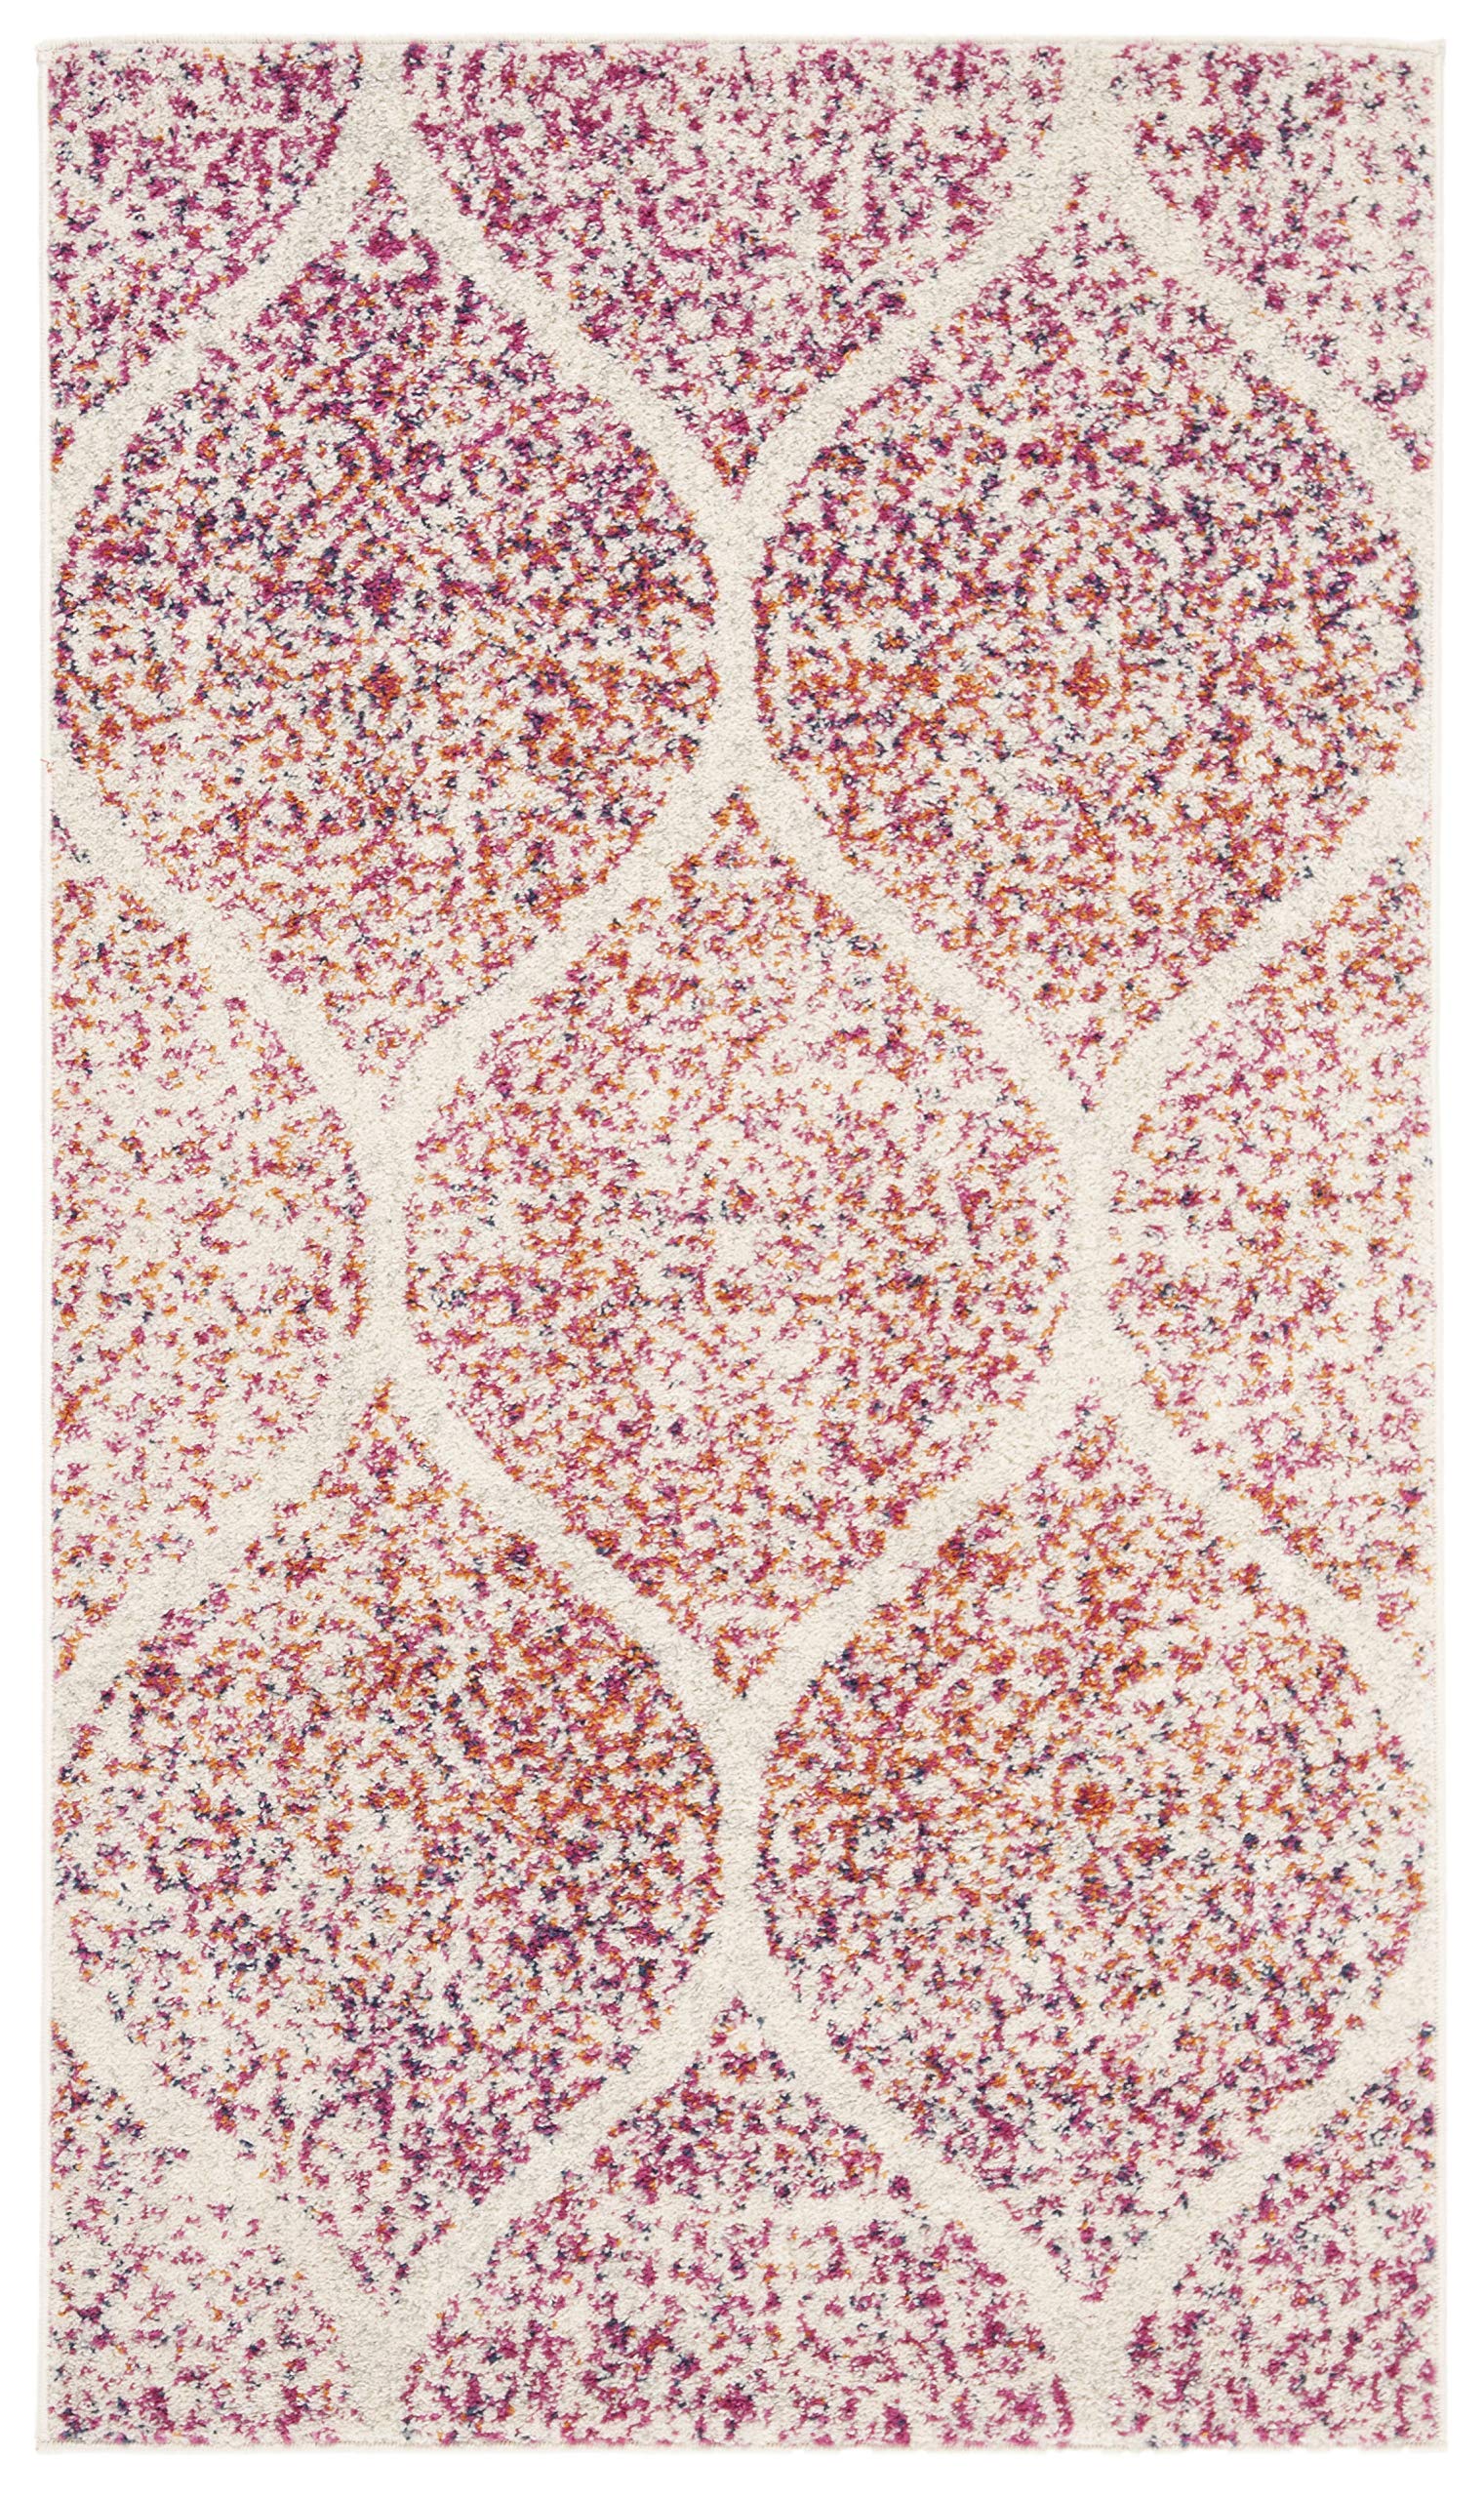 Safavieh 麦迪逊系列特色地毯 - 2'3'' x 4'，奶油色和紫红色，华丽格子仿旧设计，不脱落且易于护理，非常适合入口、客厅、卧室的人流密集区域 (MAD604R)